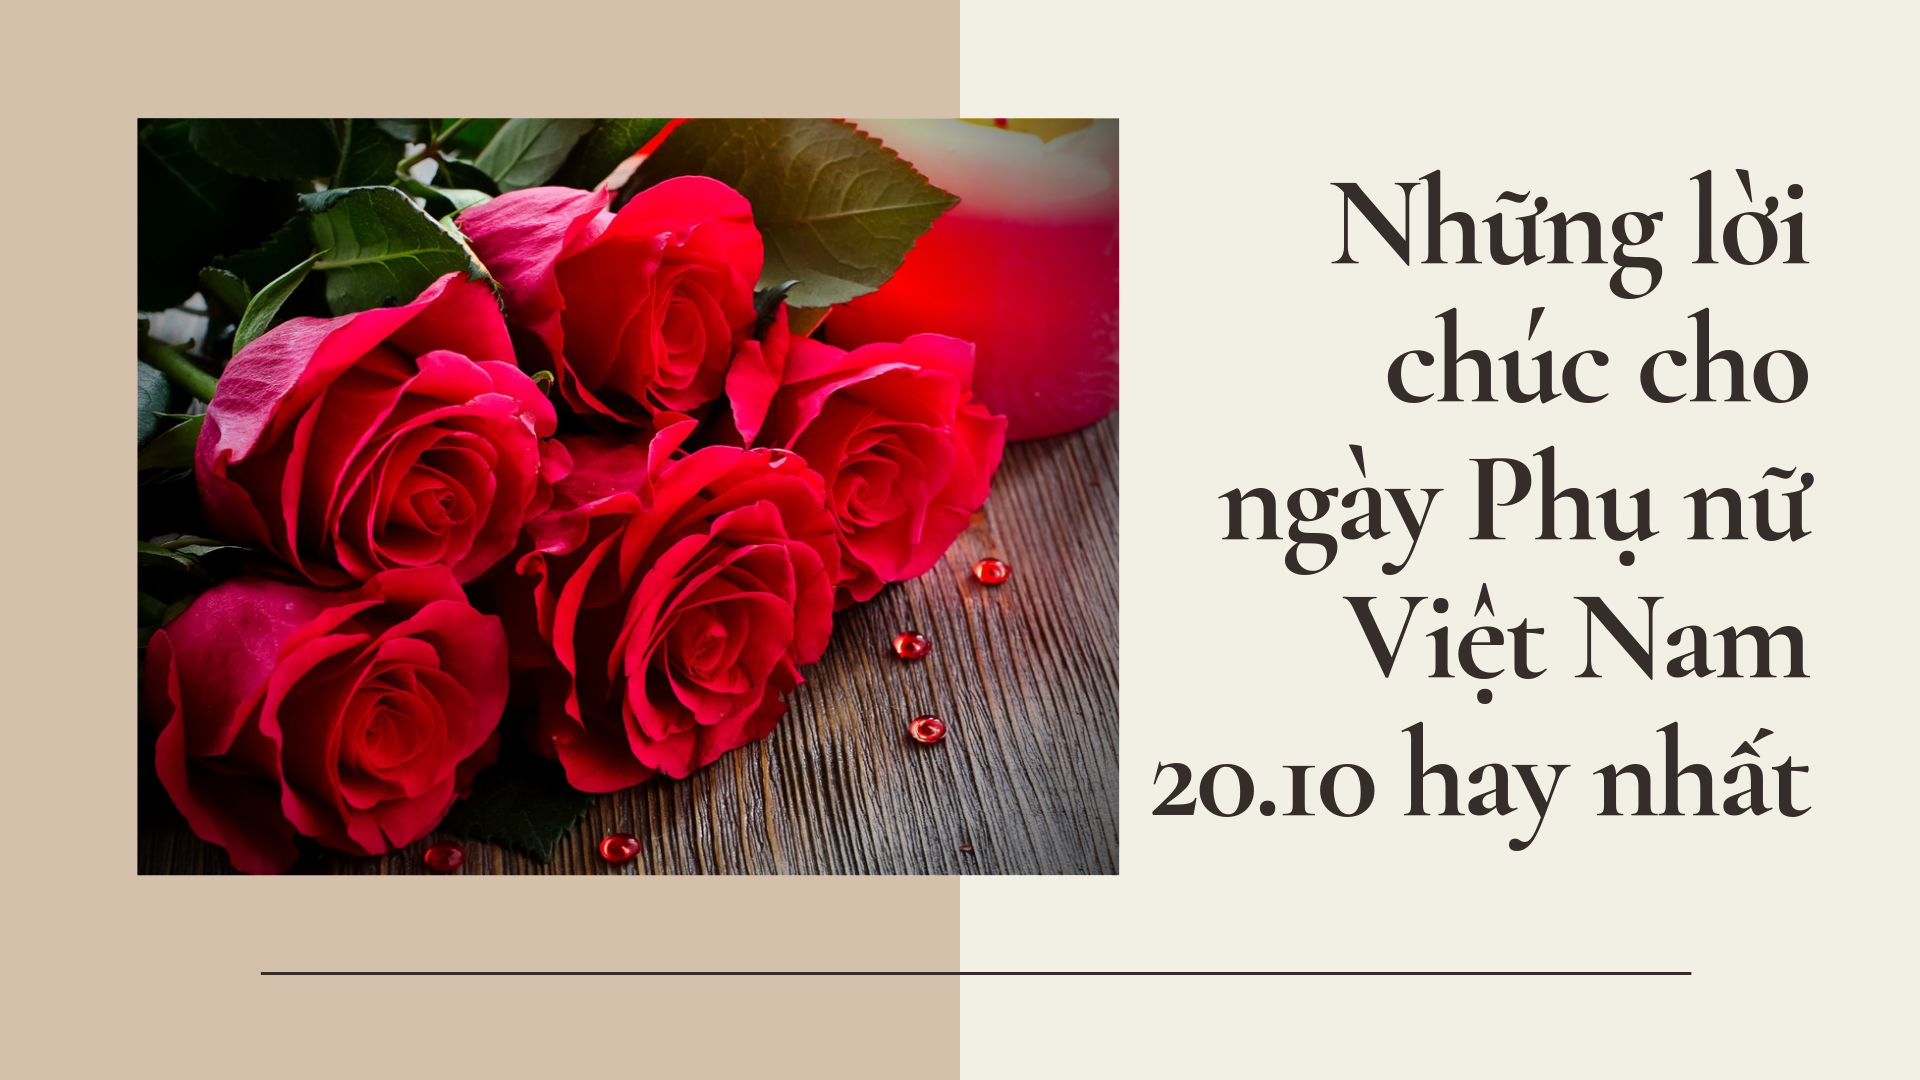 Thiệp chúc mừng Ngày phụ nữ Việt Nam: Năm 2024, hãy gửi những thiệp chúc mừng đầy ý nghĩa đến tất cả phụ nữ Việt Nam, để chúc tụng và ca ngợi phẩm chất đẹp của họ. Thiệp của bạn sẽ là một món quà tuyệt vời để thể hiện tình cảm và lòng biết ơn mà bạn dành cho phái đẹp trong cuộc sống của mình.